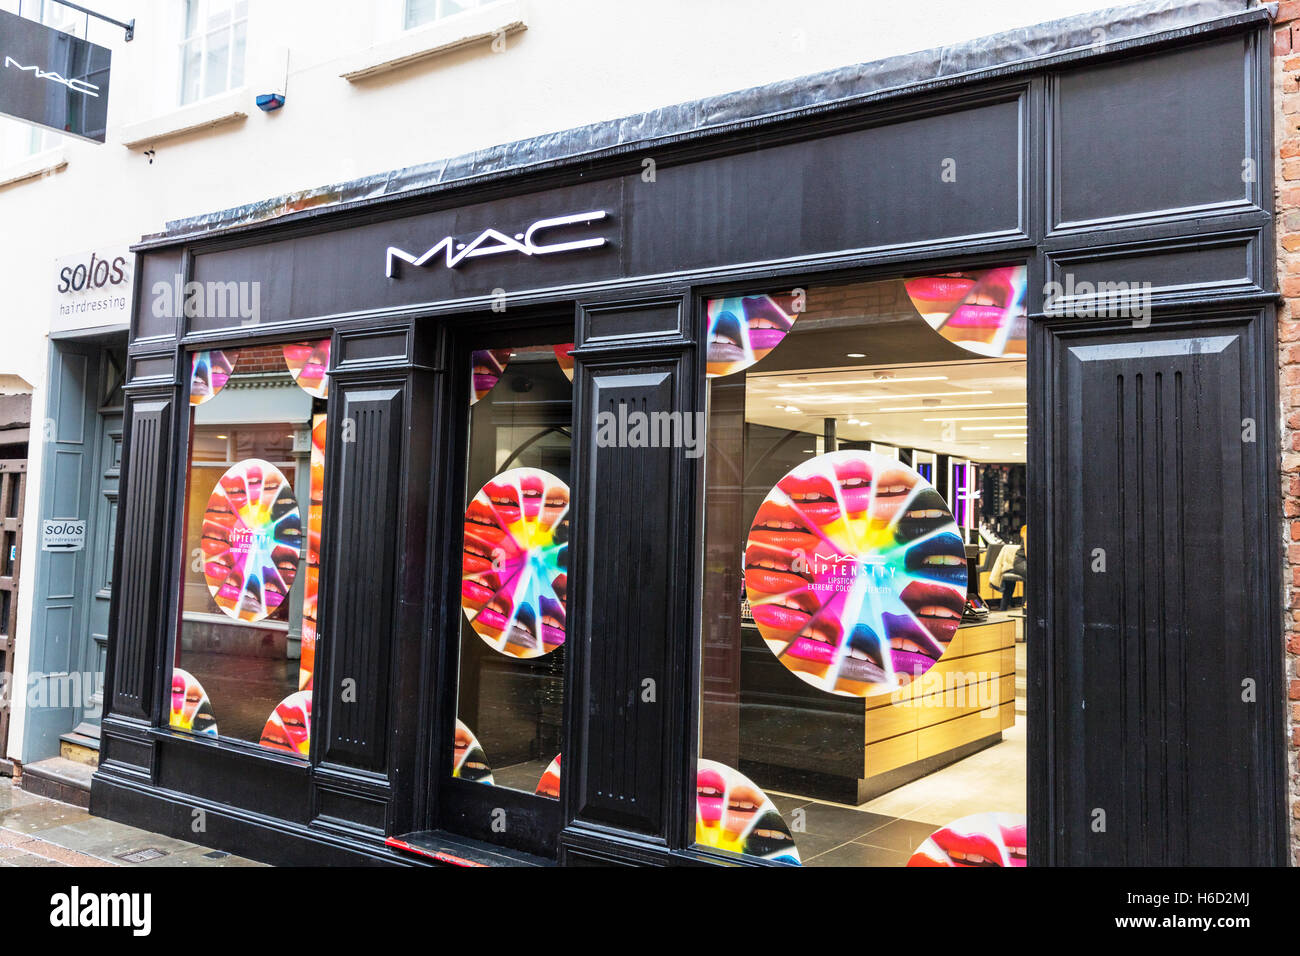 Maquillage cosmétiques MAC shop signe avant l'affichage de la fenêtre d'extérieur de bâtiment shop store signe UK Angleterre GO Banque D'Images